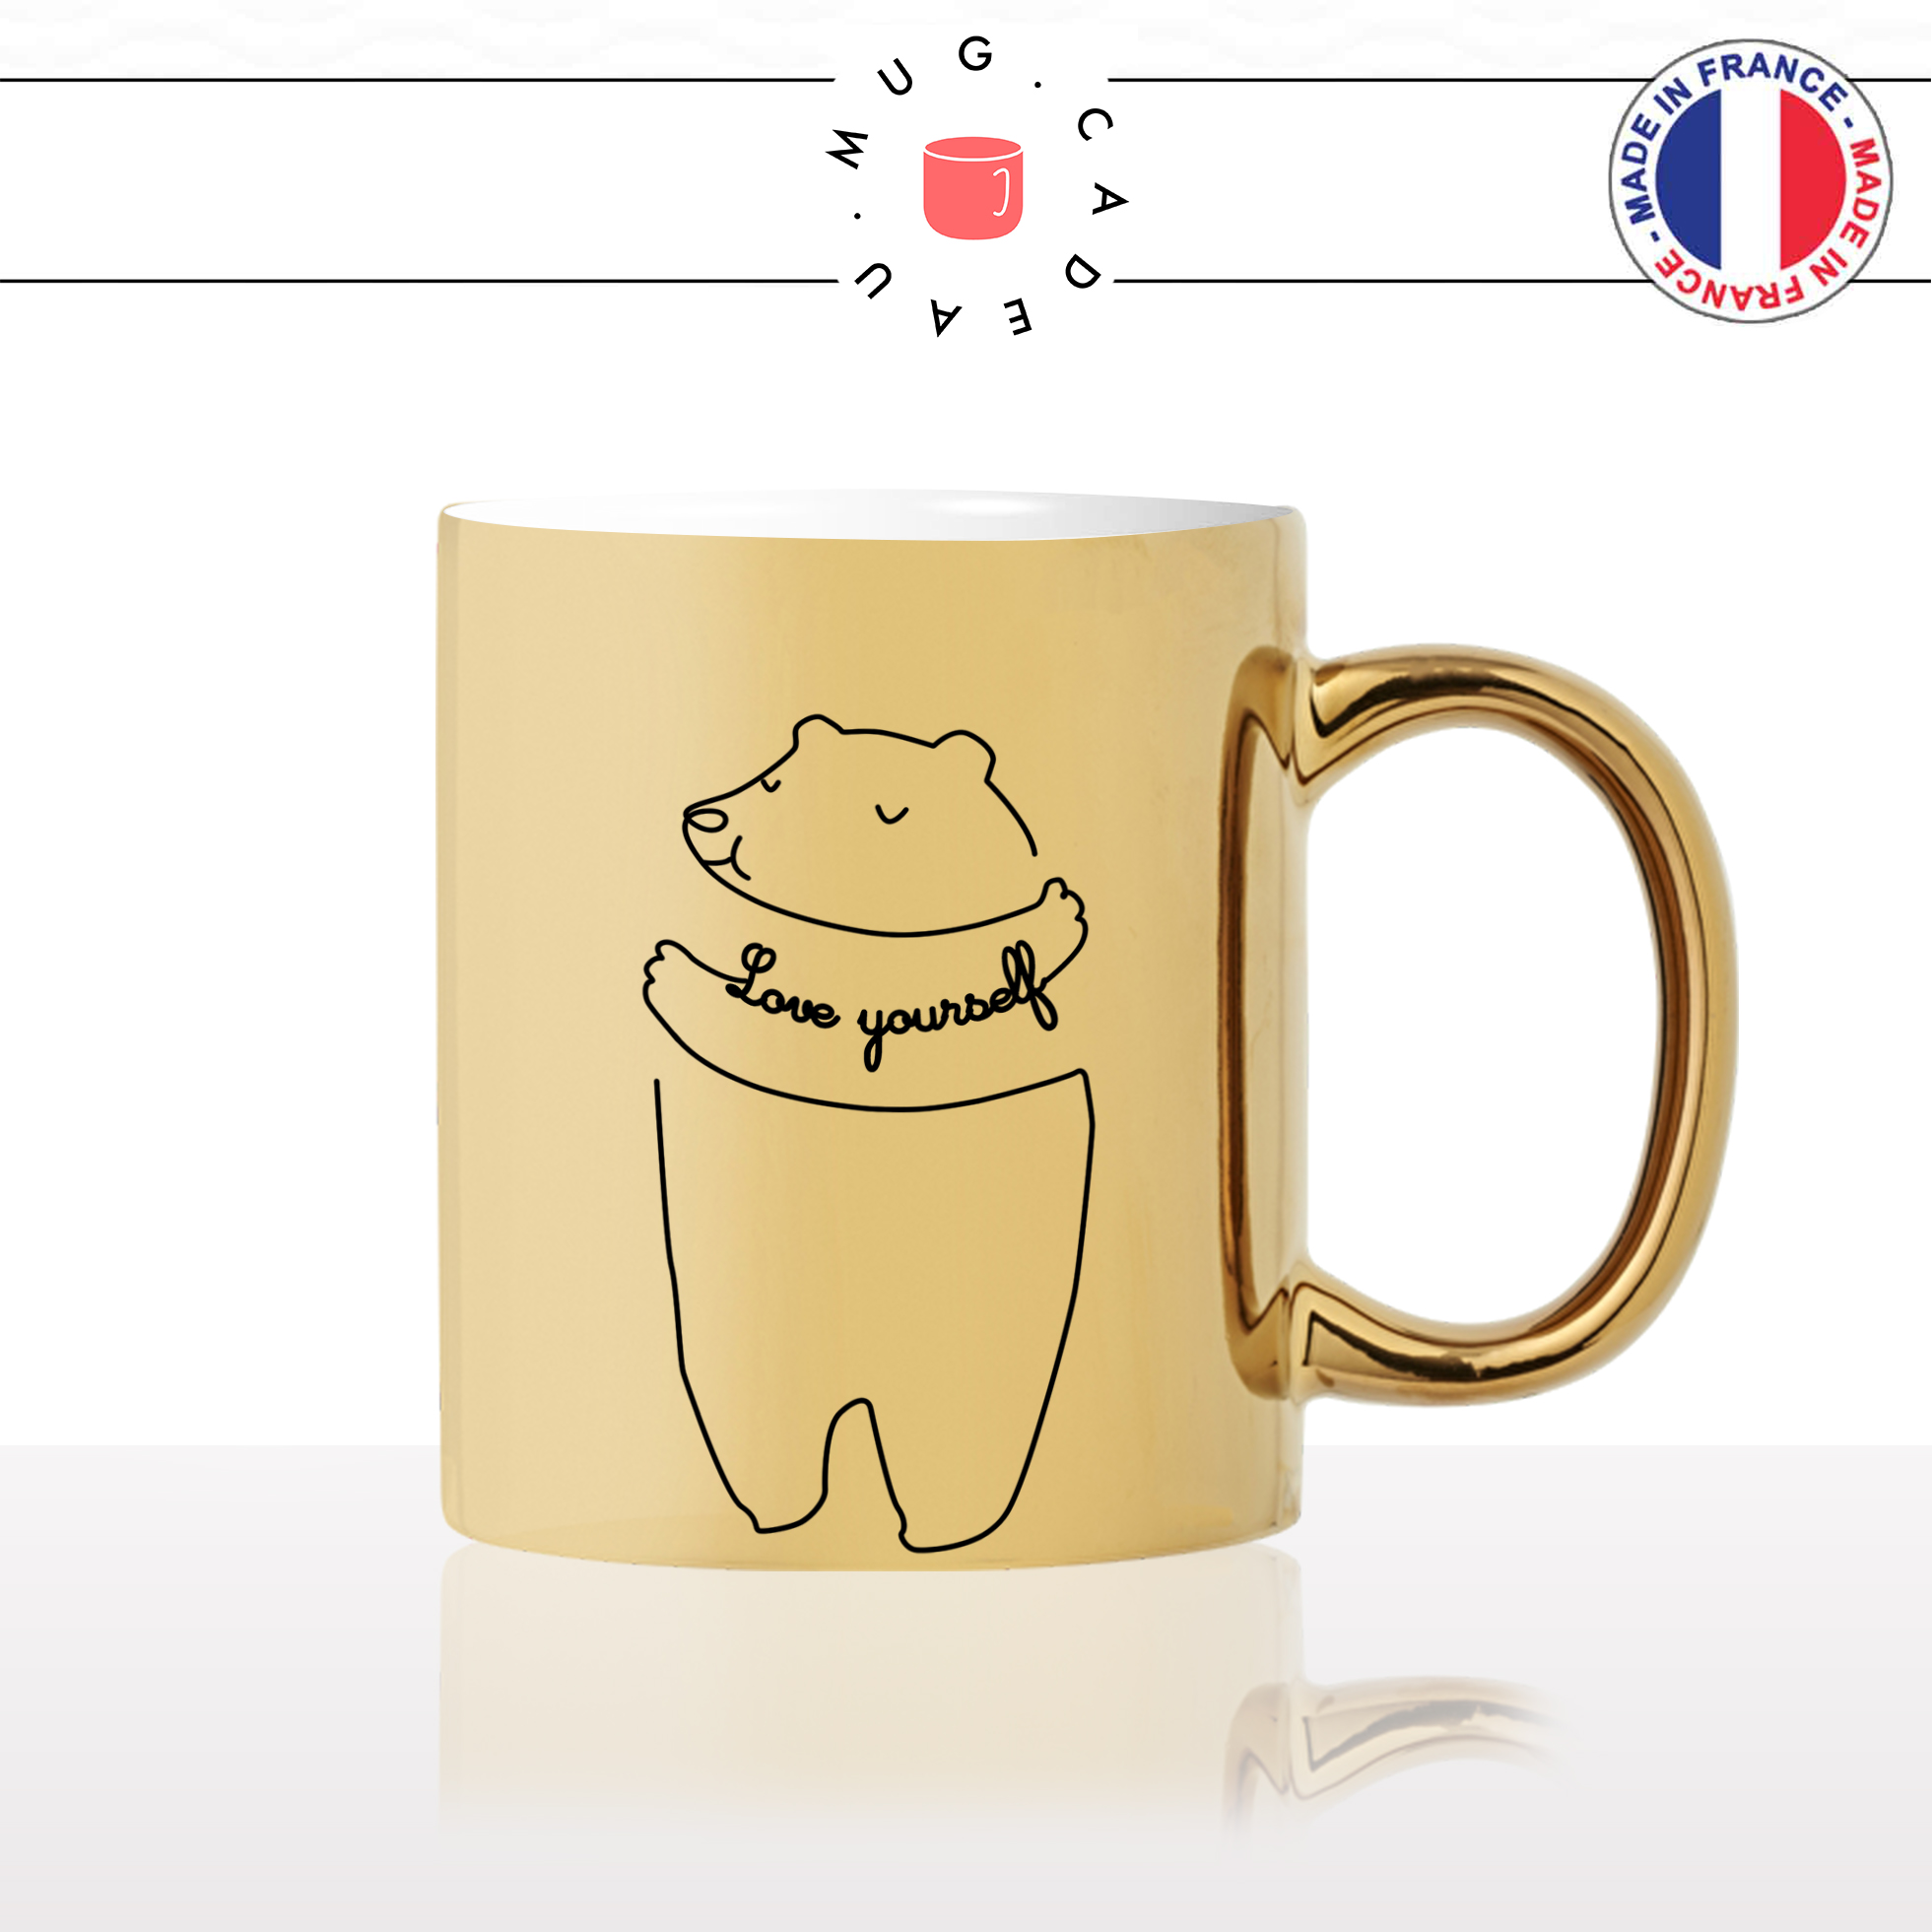 mug-tasse-or-doré-ours-love-yourself-dessin-drole-mignon-animal-noir-fun-café-thé-idée-cadeau-original-personnalisé-gold2-min